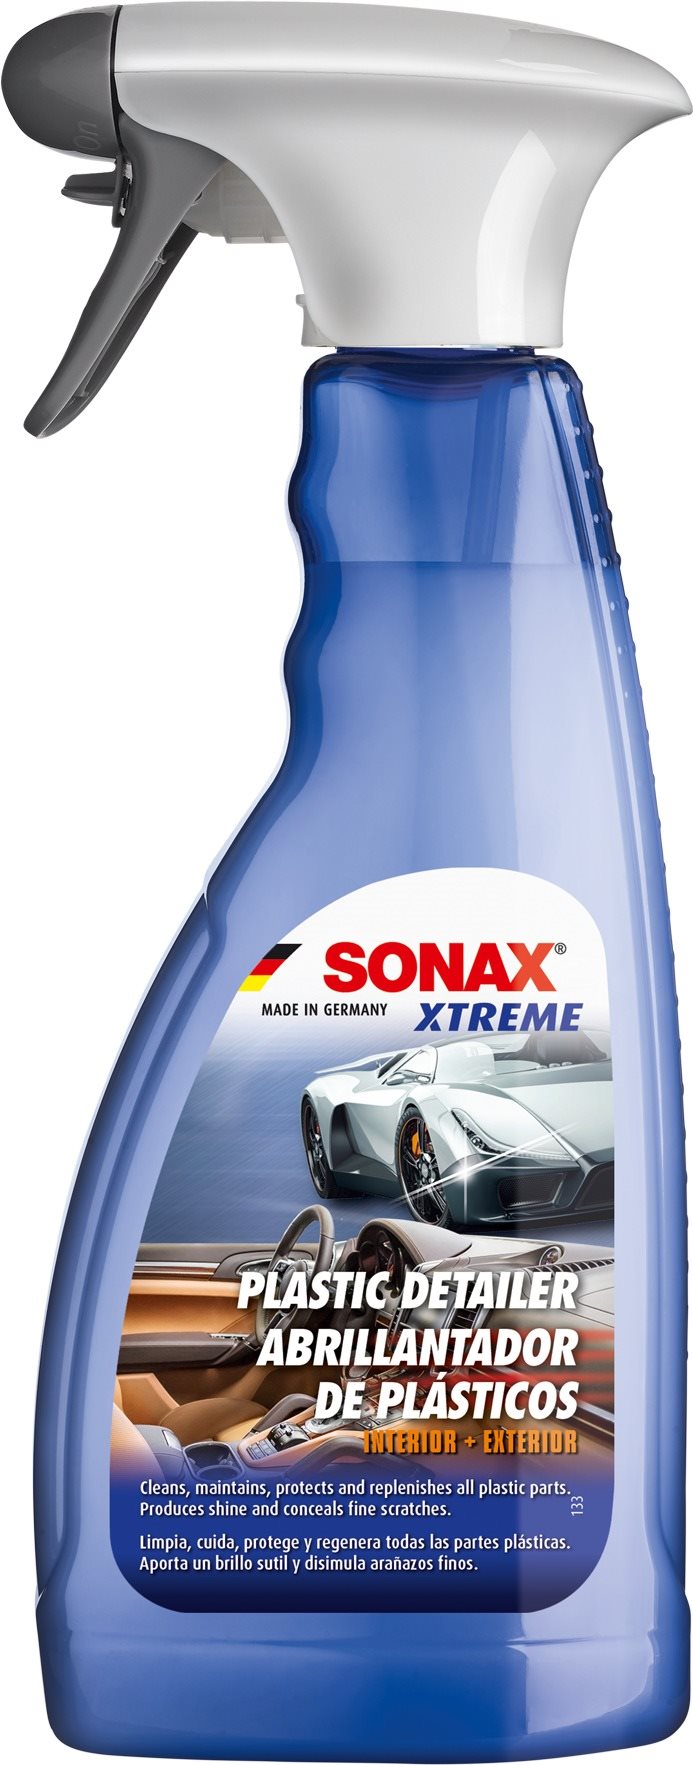 SONAX XTREME Detailer Cleaner tisztítószer a belső és külső műanyag alkatrészek tisztítására, védelm